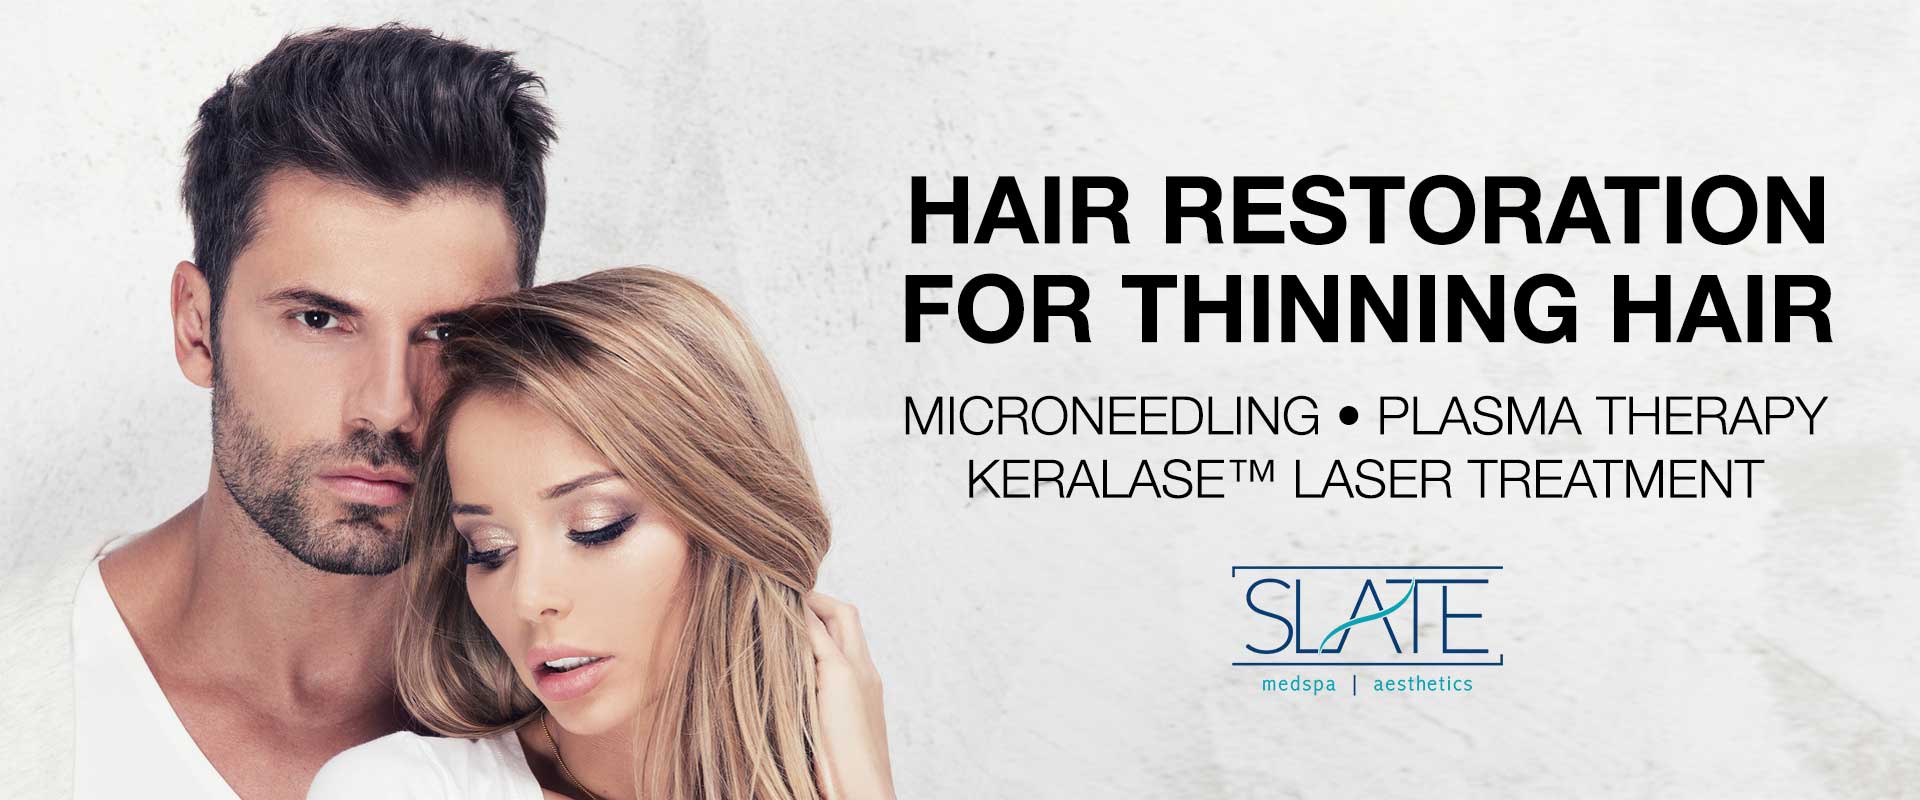 keralase-hair-restoration